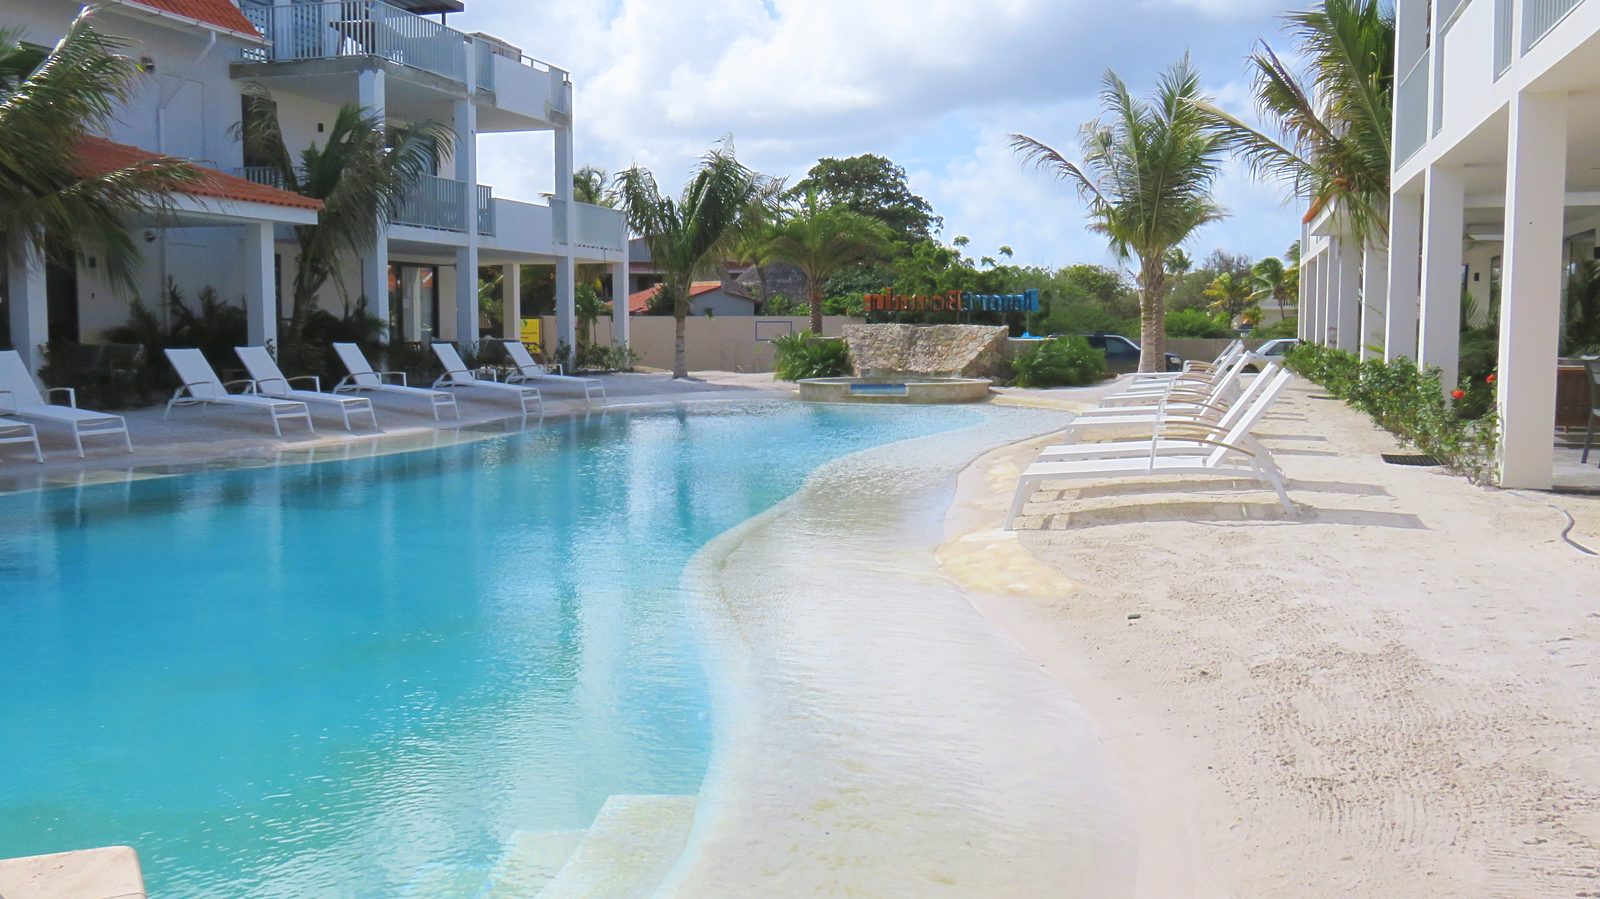 Nehmen Sie den Swimming-Pool im Resort Bonaire in Augenschein. An diesem Strand-Pool können Sie entspannen und das Wetter genießen. Auch die Kinder werden hier eine tolle Zeit verbringen.